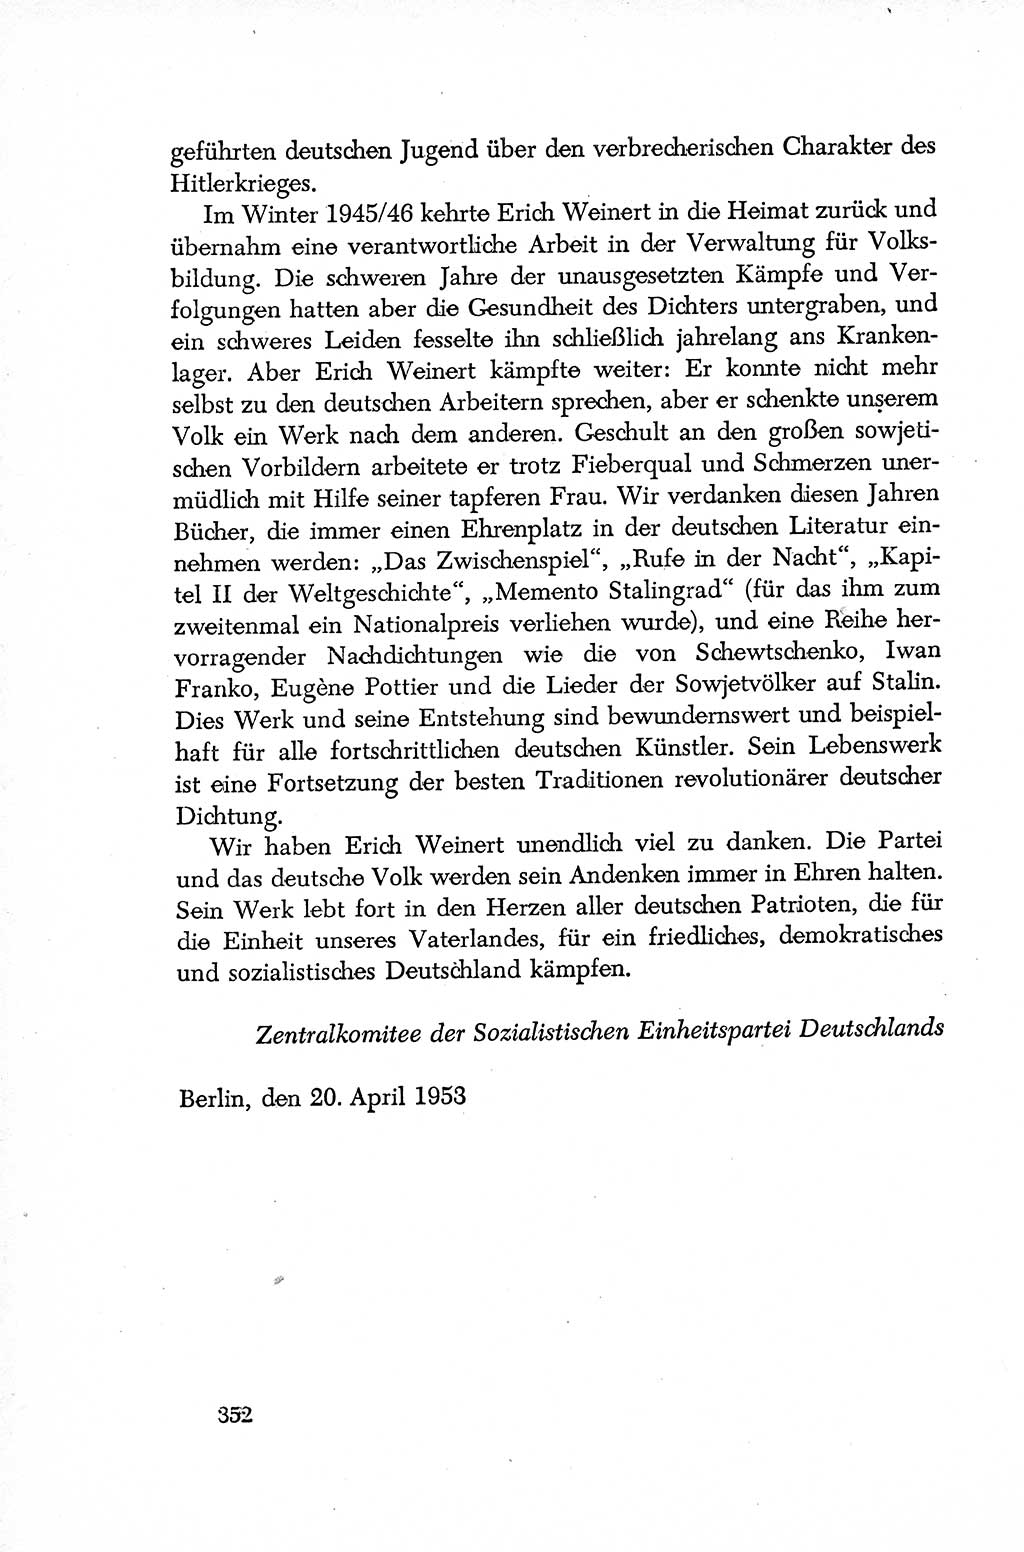 Dokumente der Sozialistischen Einheitspartei Deutschlands (SED) [Deutsche Demokratische Republik (DDR)] 1952-1953, Seite 352 (Dok. SED DDR 1952-1953, S. 352)